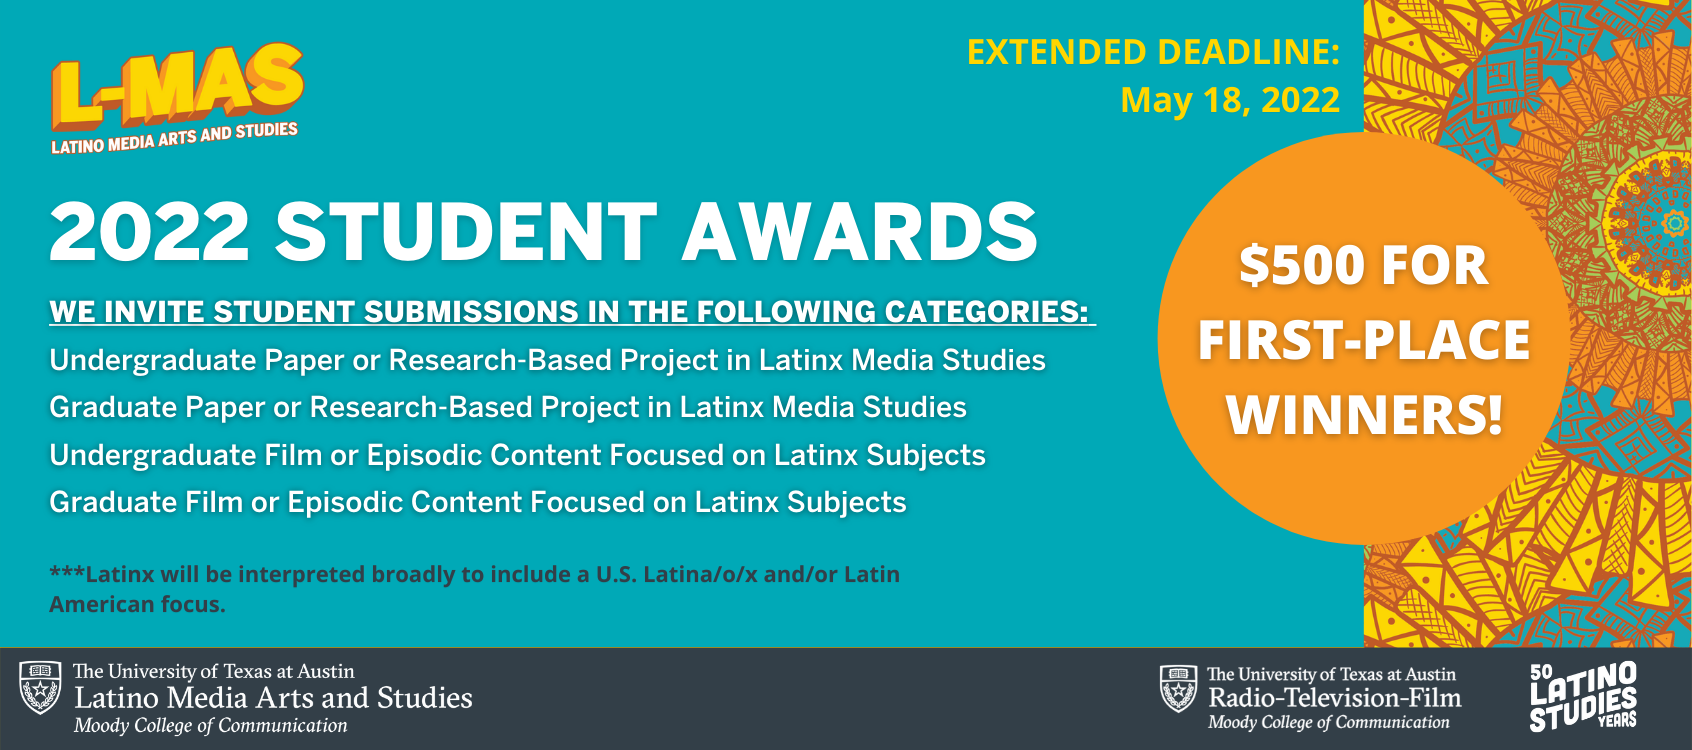 L-MAS Student Awards - new deadline